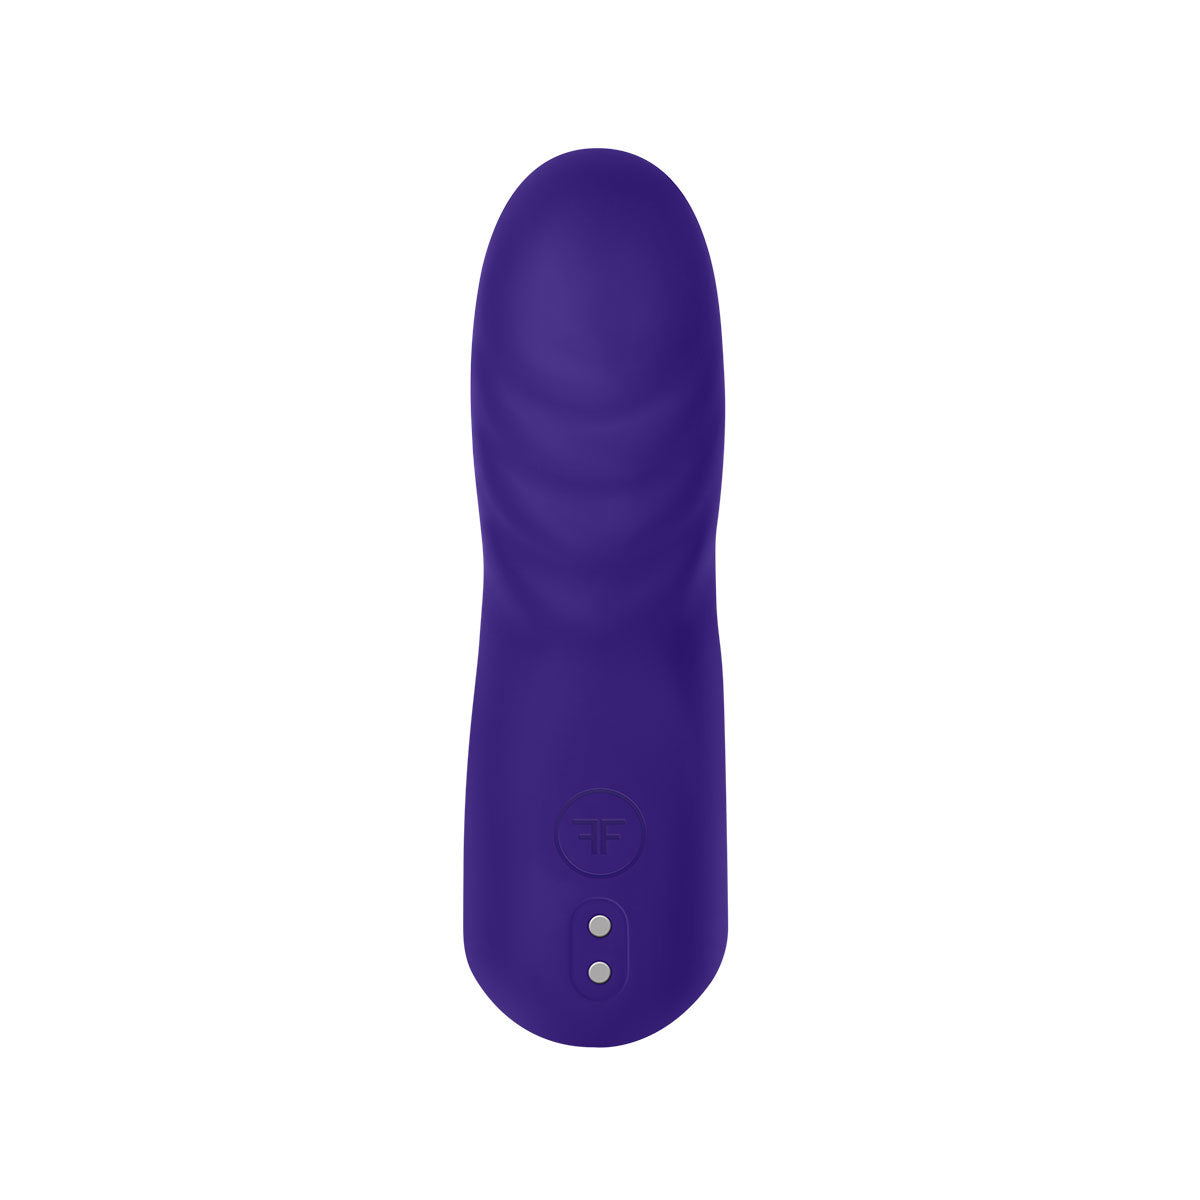 Dioni Finger Vibrator by Vvole: Electrifying Pleasure Small Dark Purple